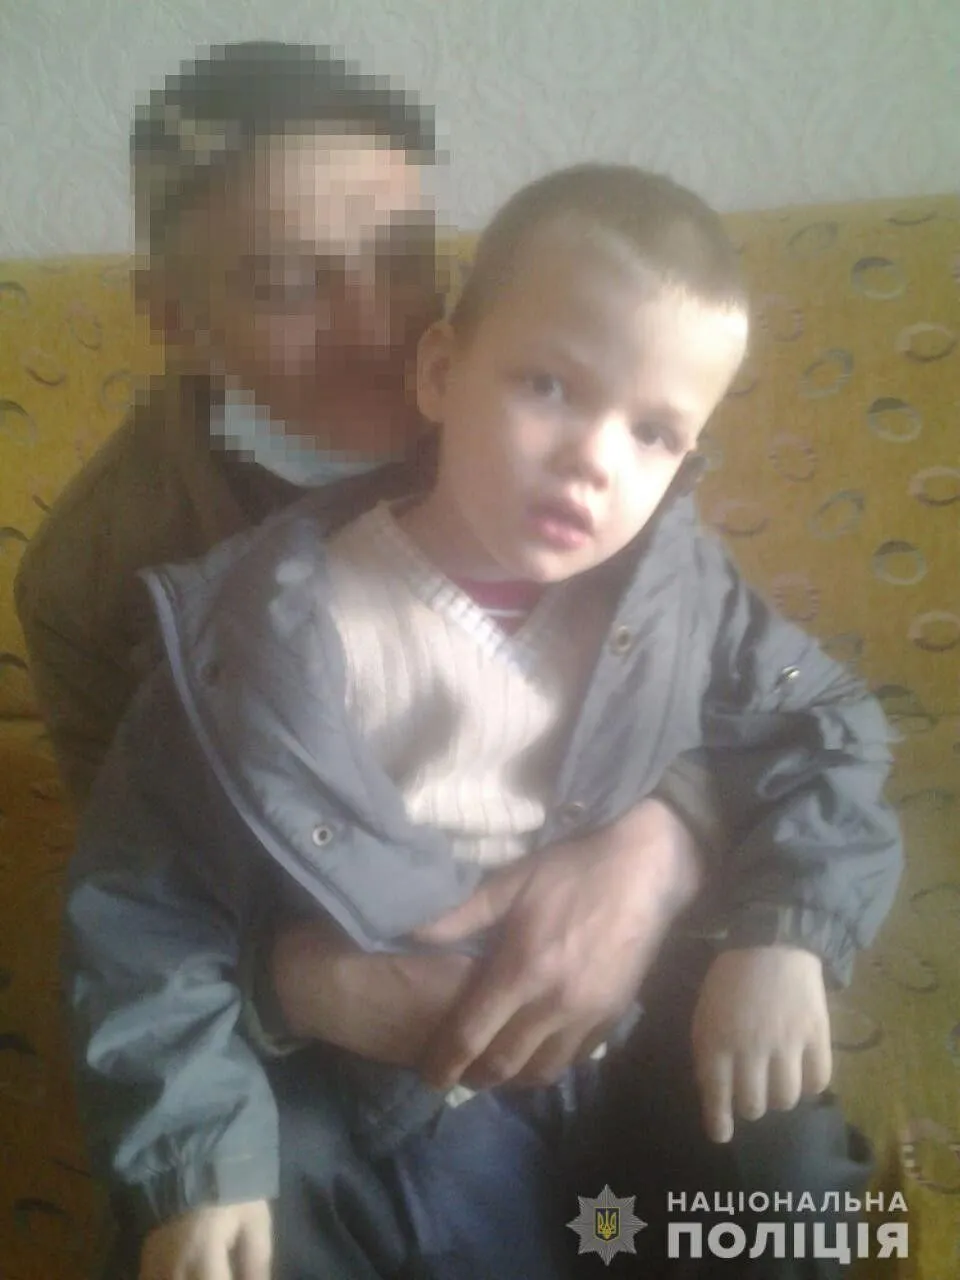 “6-річного хлопчика знайшли мертвим і без одягу в полі”: жахлива трагедія шокувала Україну, що сталося? (ФОТО)